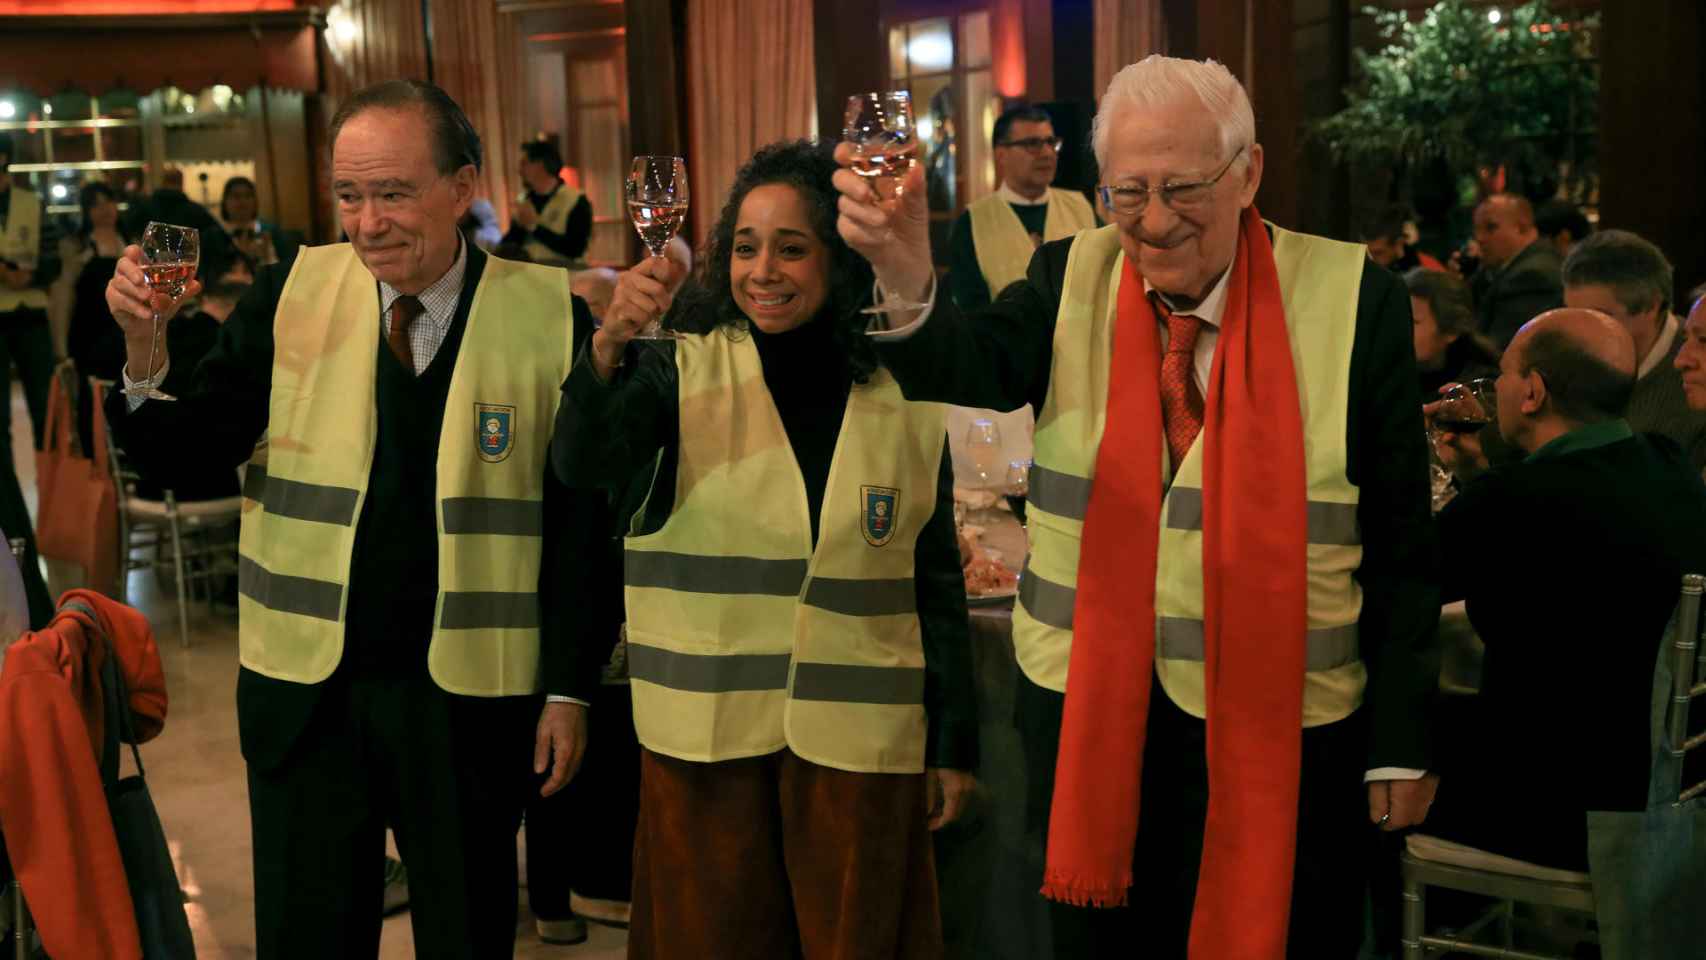 De izquieda a derecha: Gregorio Marañón, presidente del Teatro Real; Julissa Reynoso, embajadora de Estados Unidos en España; y el padre Ángel, fundador de Mensajeros de la Paz.